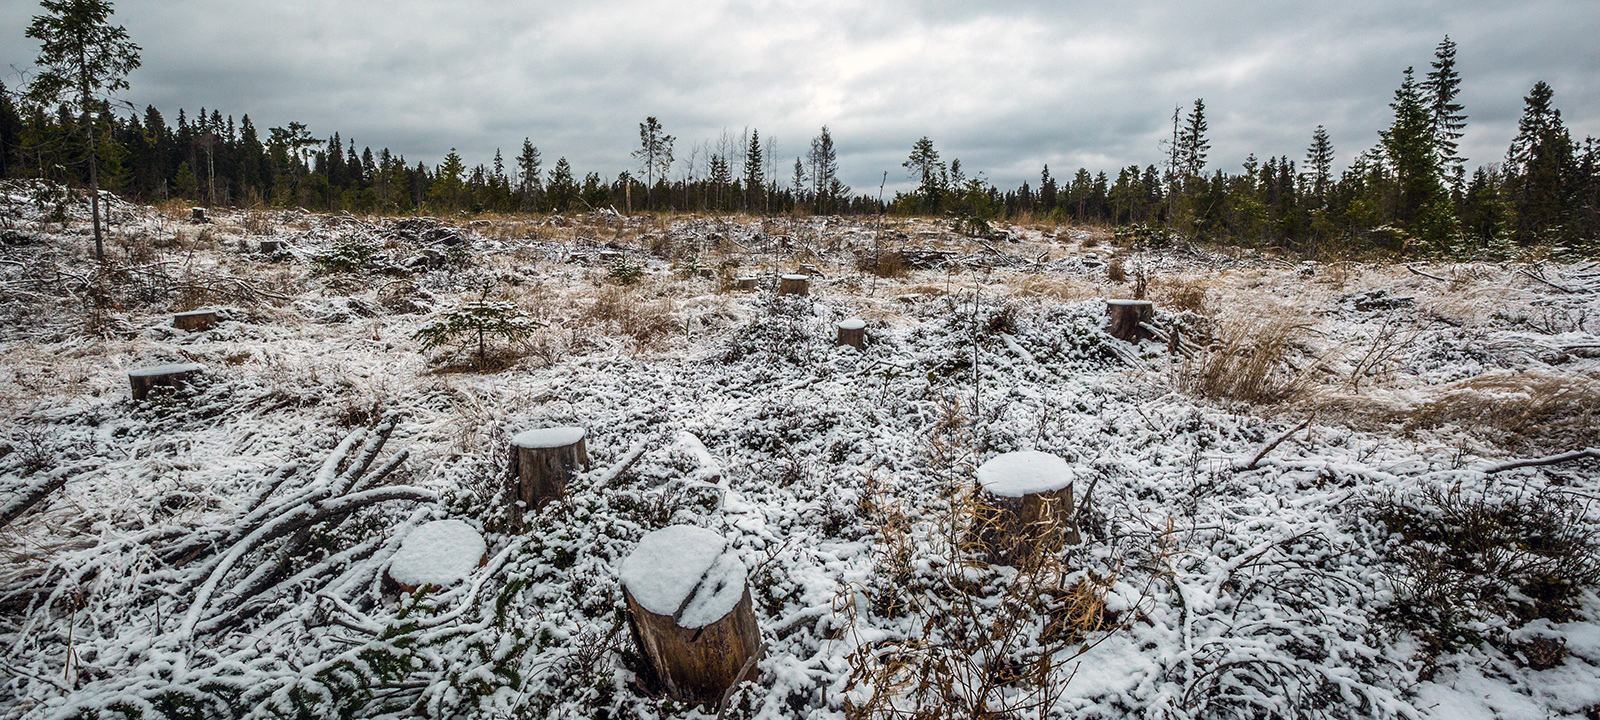 Жители Пудожского района Карелии требуют остановить варварскую рубку леса